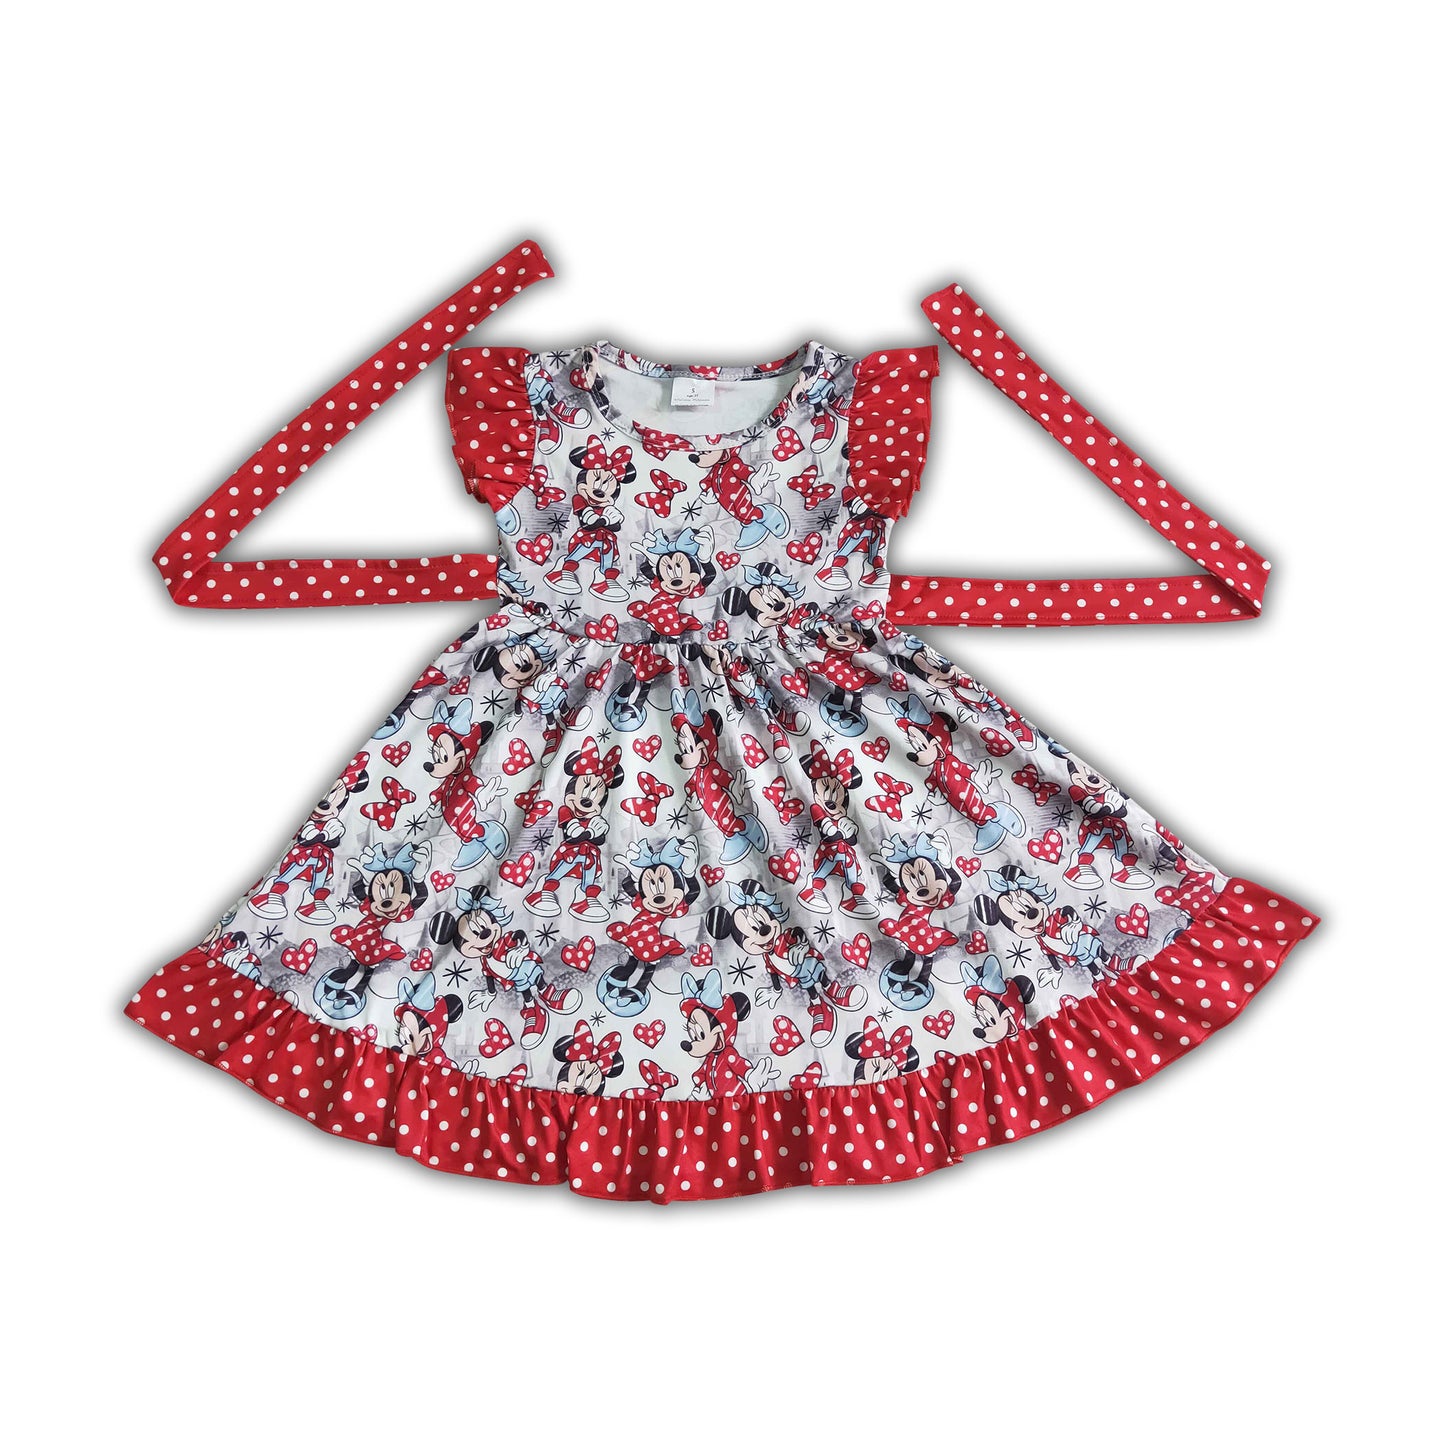 Flutter sleeve cute mouse print belt girls summer twirl dresses